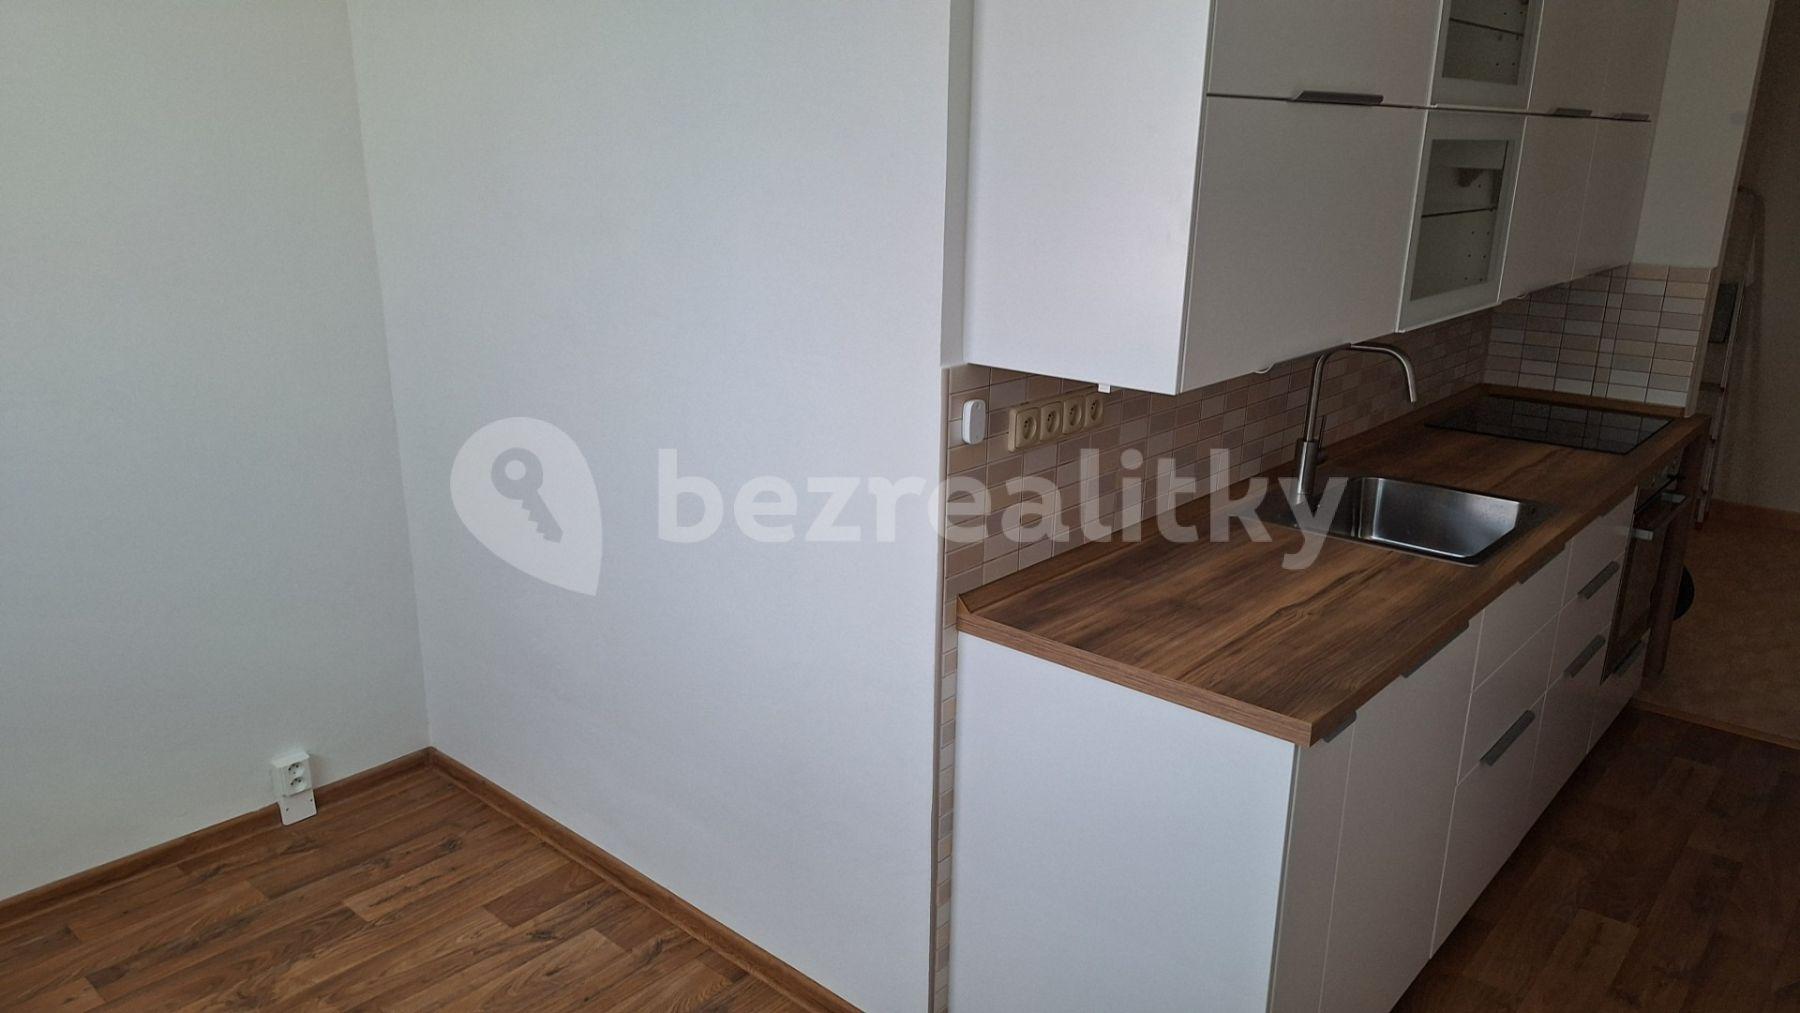 2 bedroom with open-plan kitchen flat to rent, 53 m², Myslbekova, Třebíč, Vysočina Region